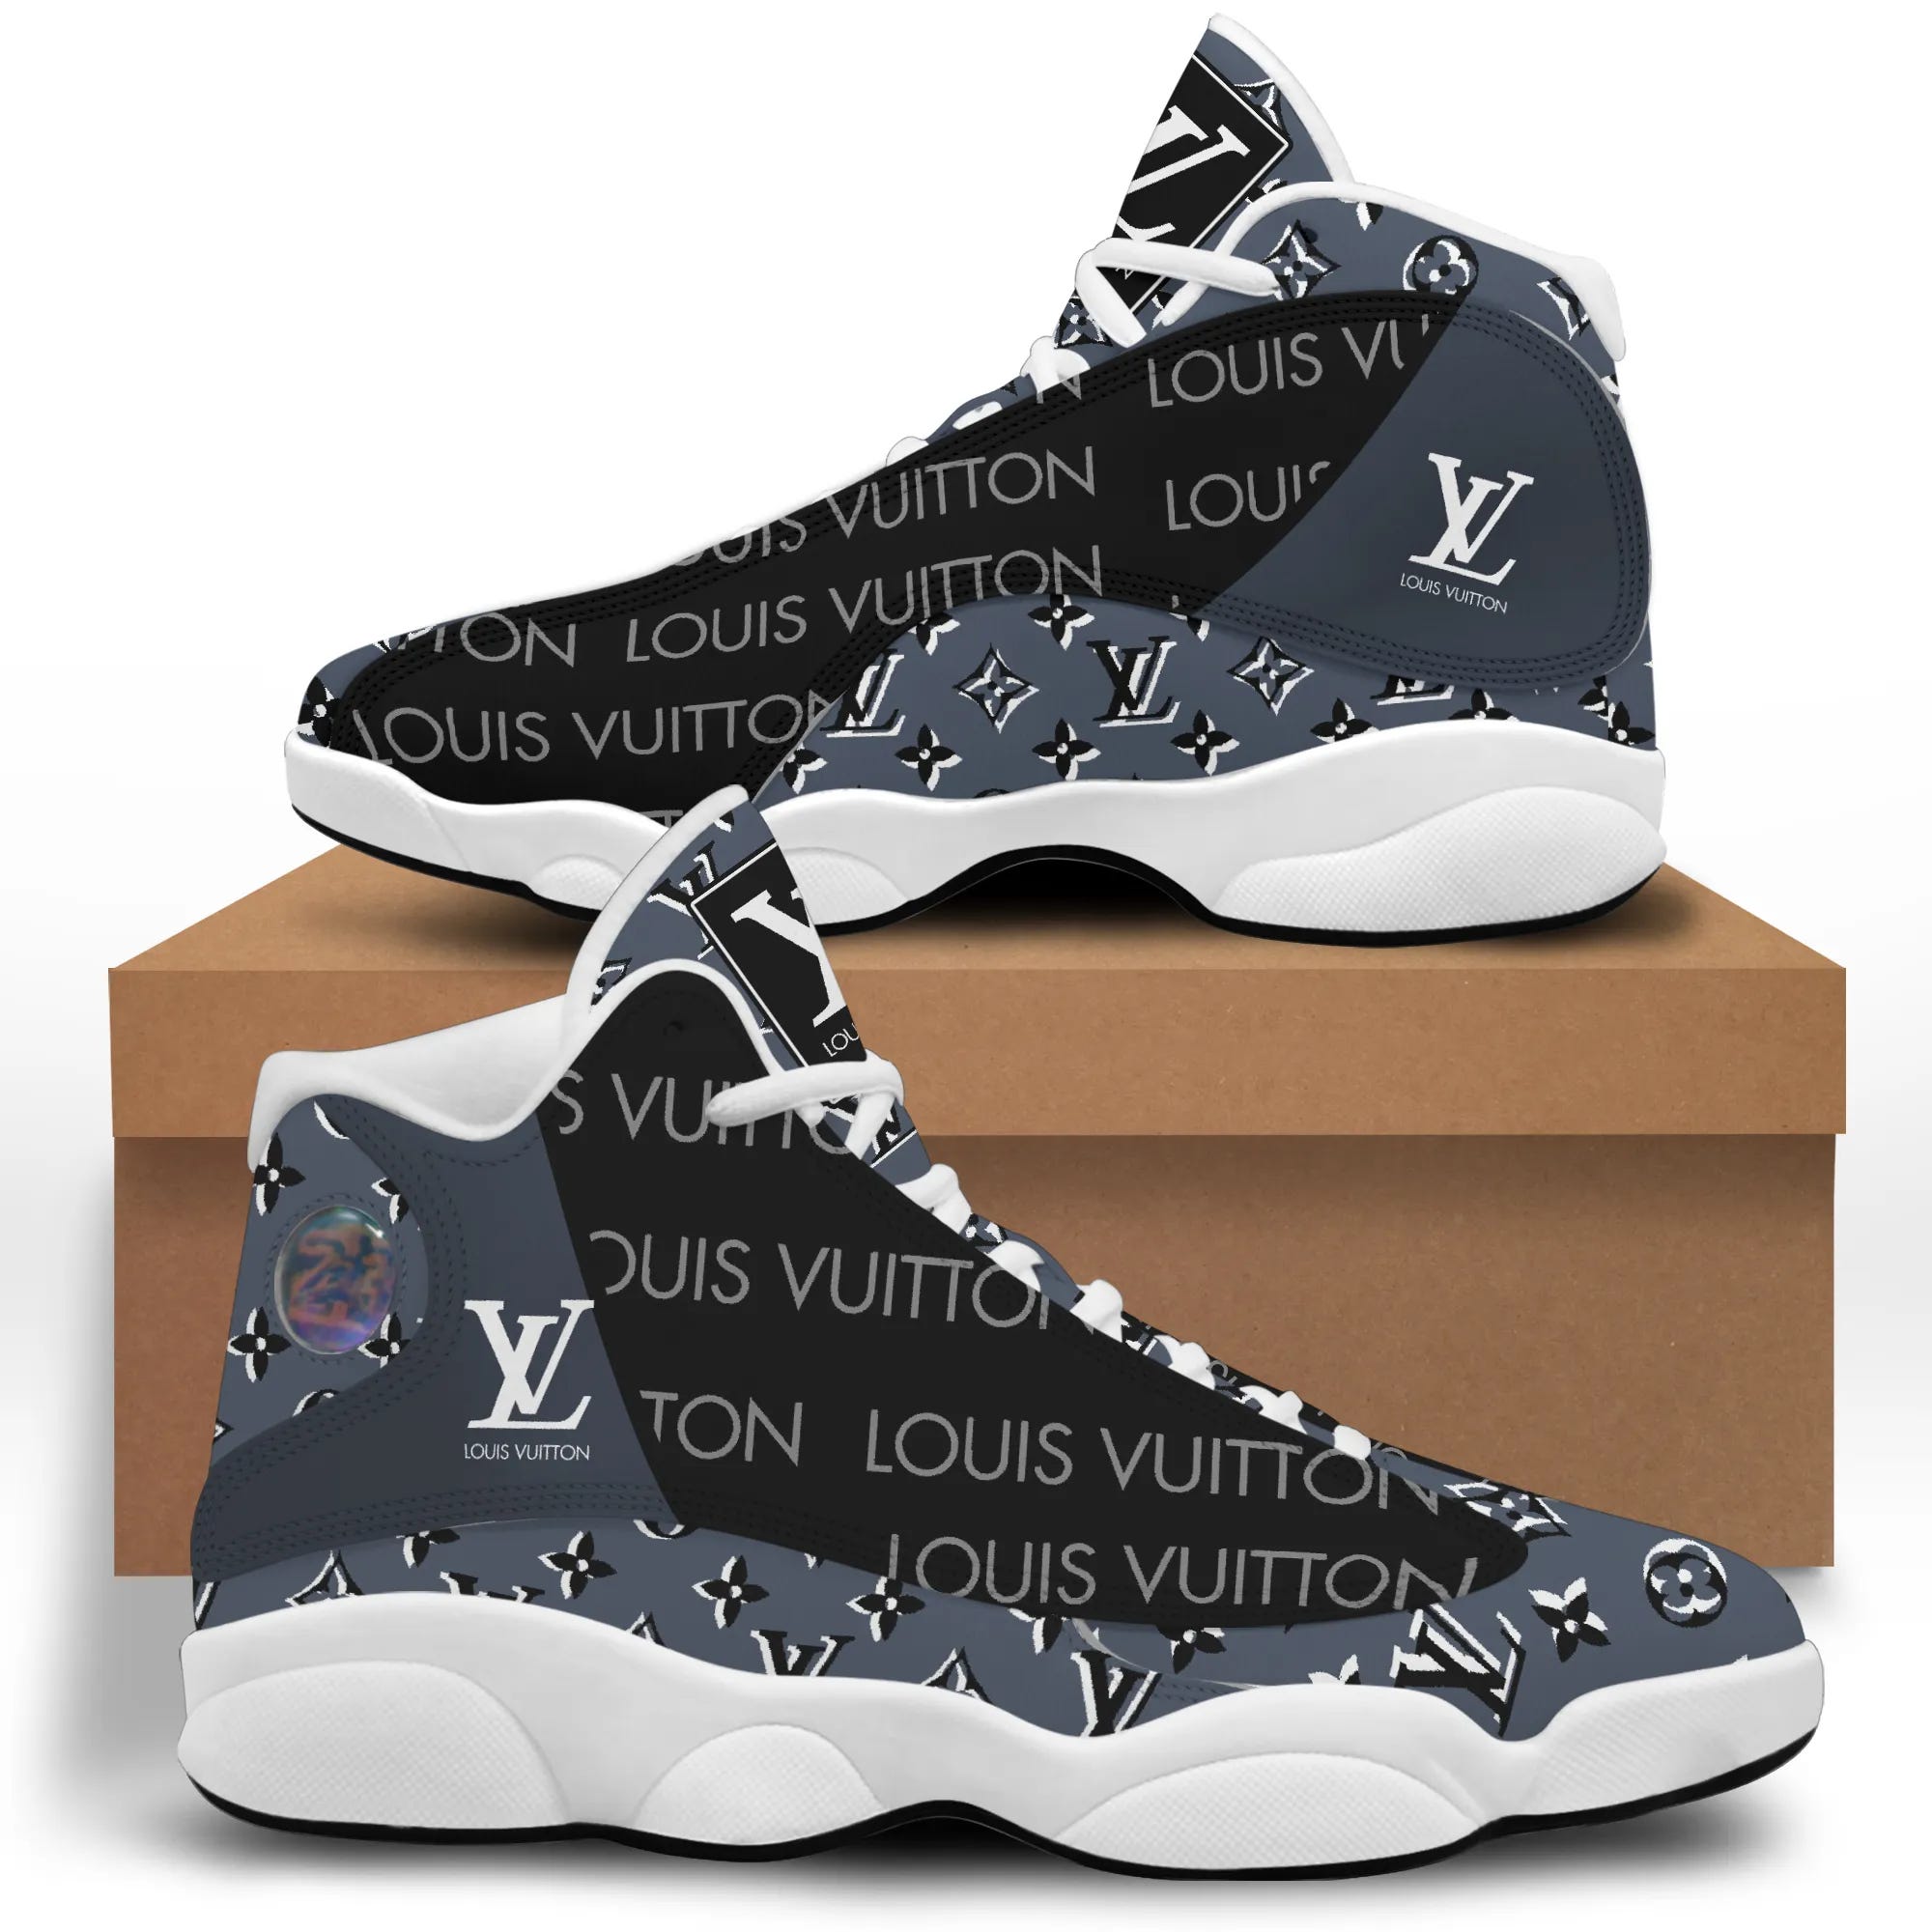 Louis vuitton air jordan 13 black white sneaker